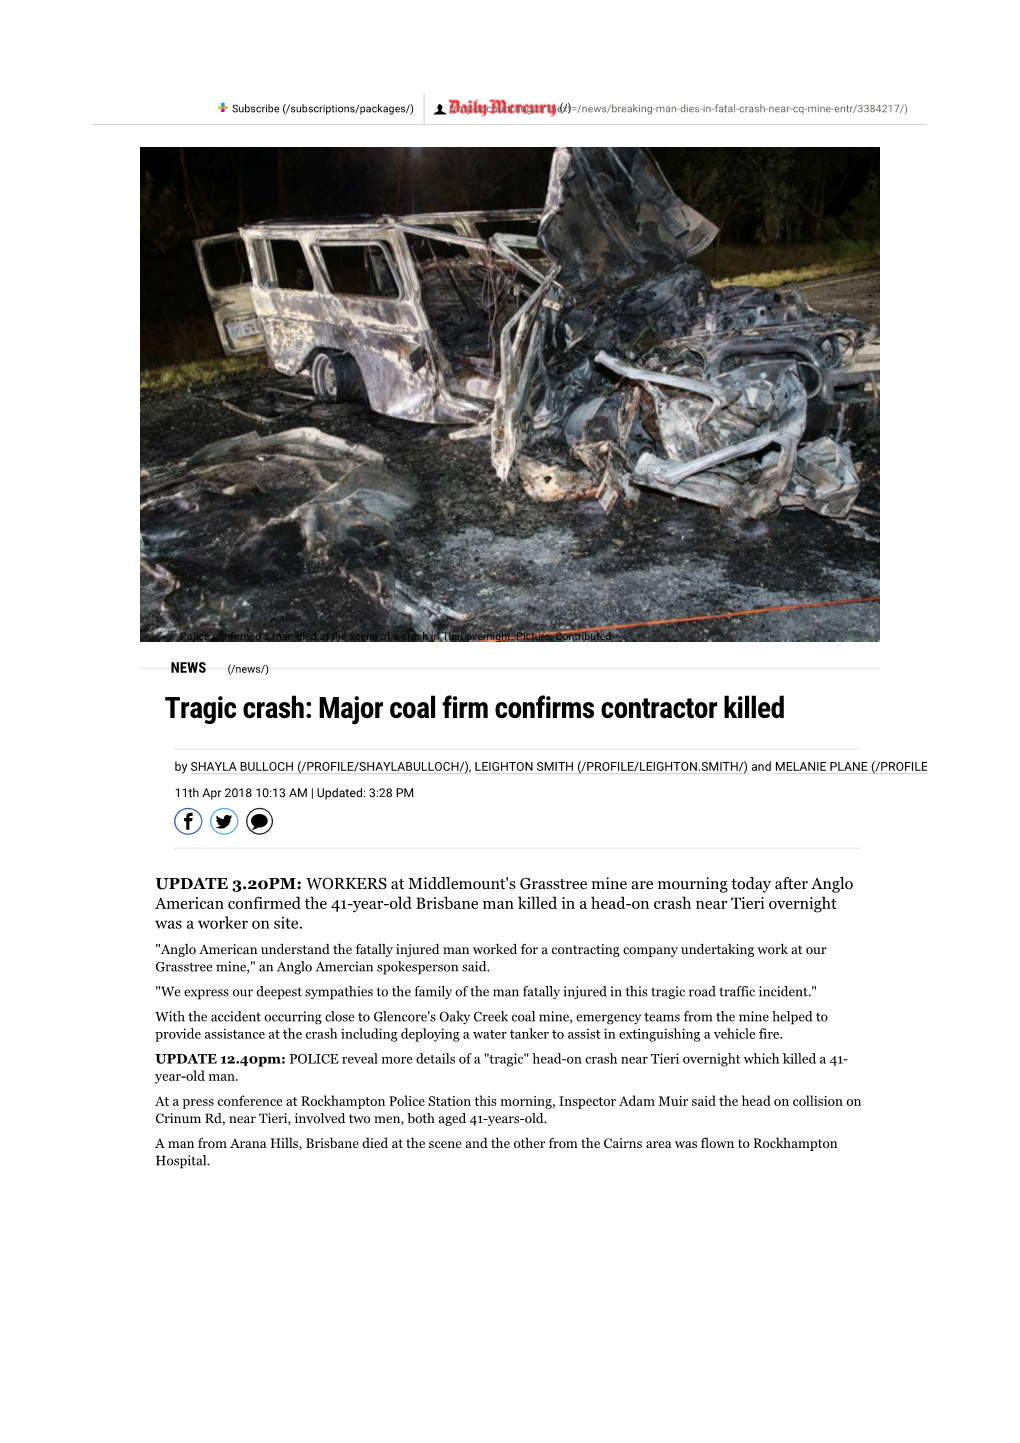 Tragic Crash: Major Coal Firm Confirms Contractor Killed